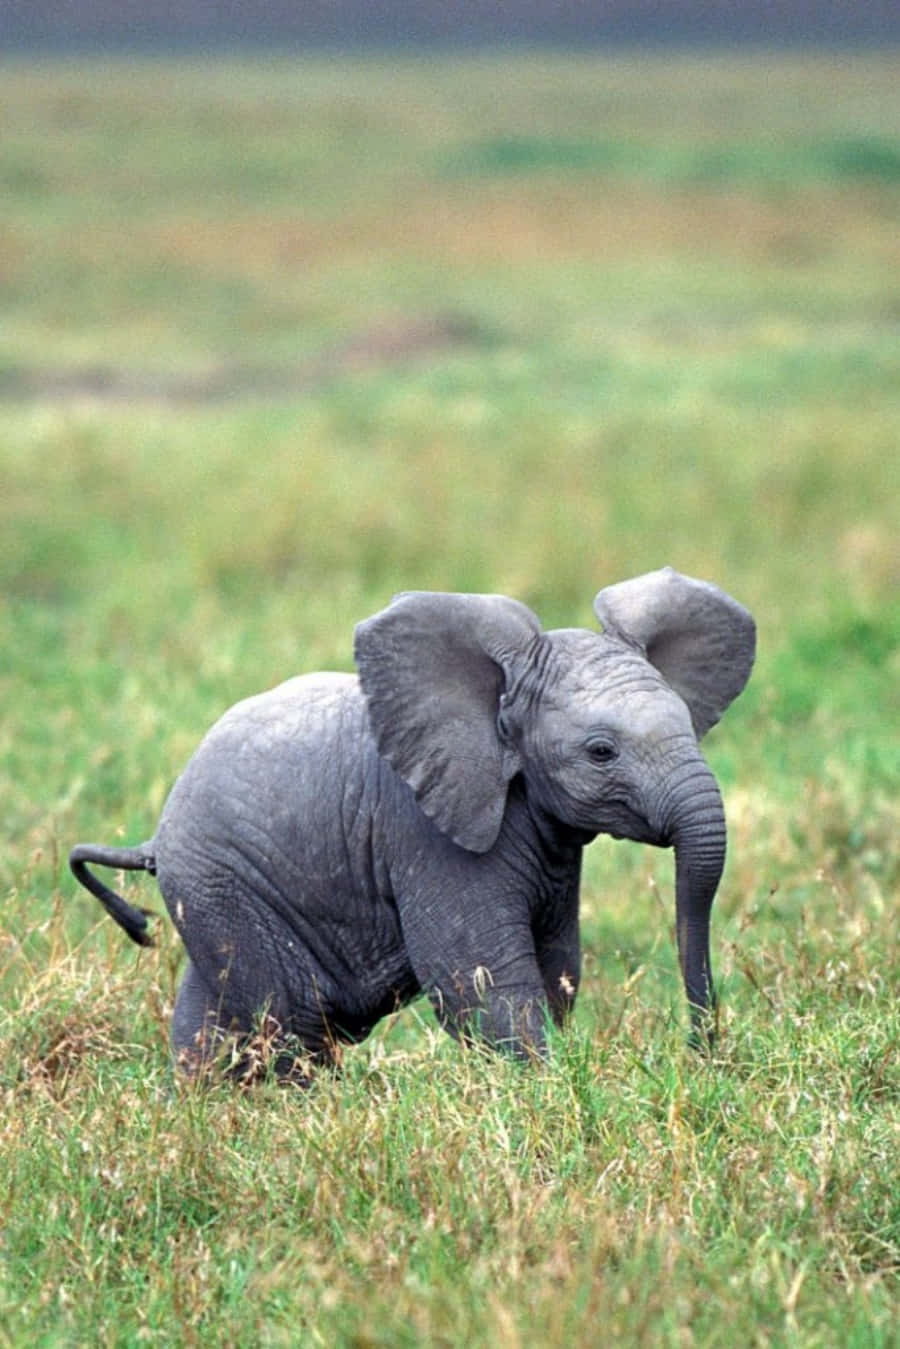 Olhecomo Este Elefante É Adorável!